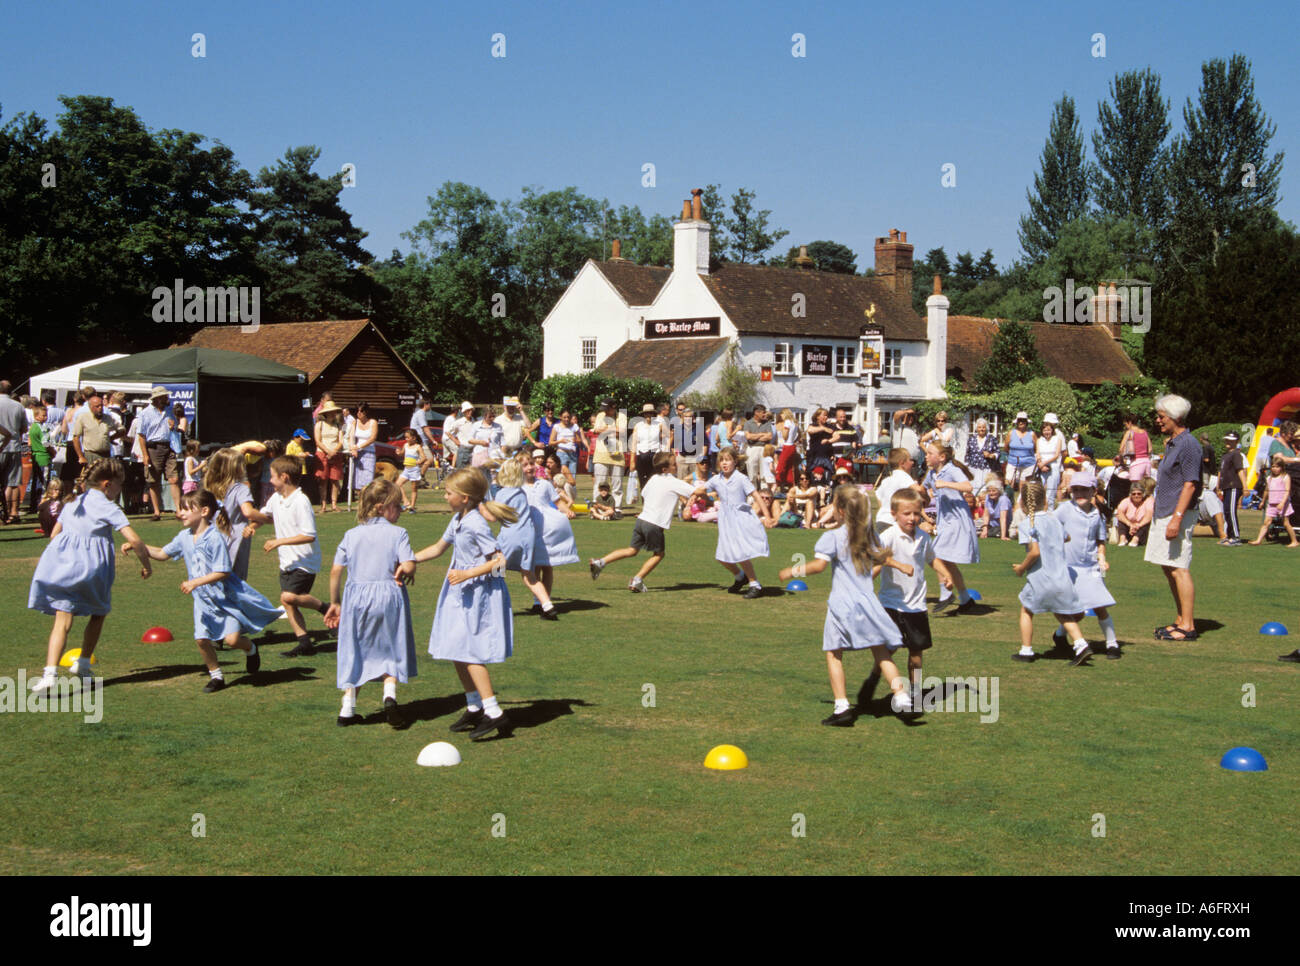 TILFORD Sommer Dorffest mit Kinder-Country Dance auf einem Dorfplatz. Tilford Surrey England UK Großbritannien Stockfoto